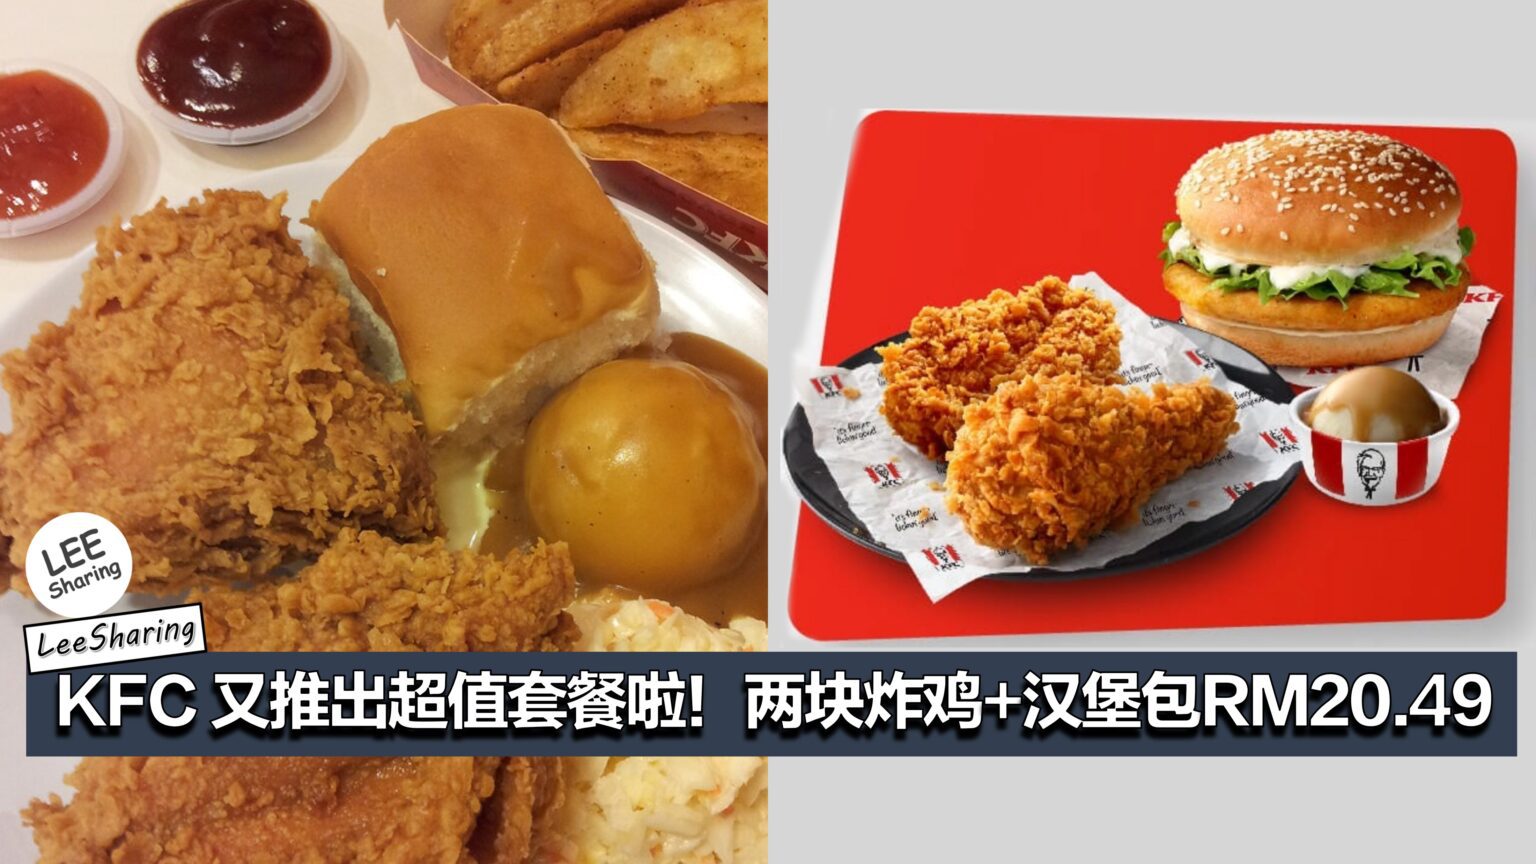 KFC 又推出超值套餐啦！两块炸鸡+汉堡包RM20.49！